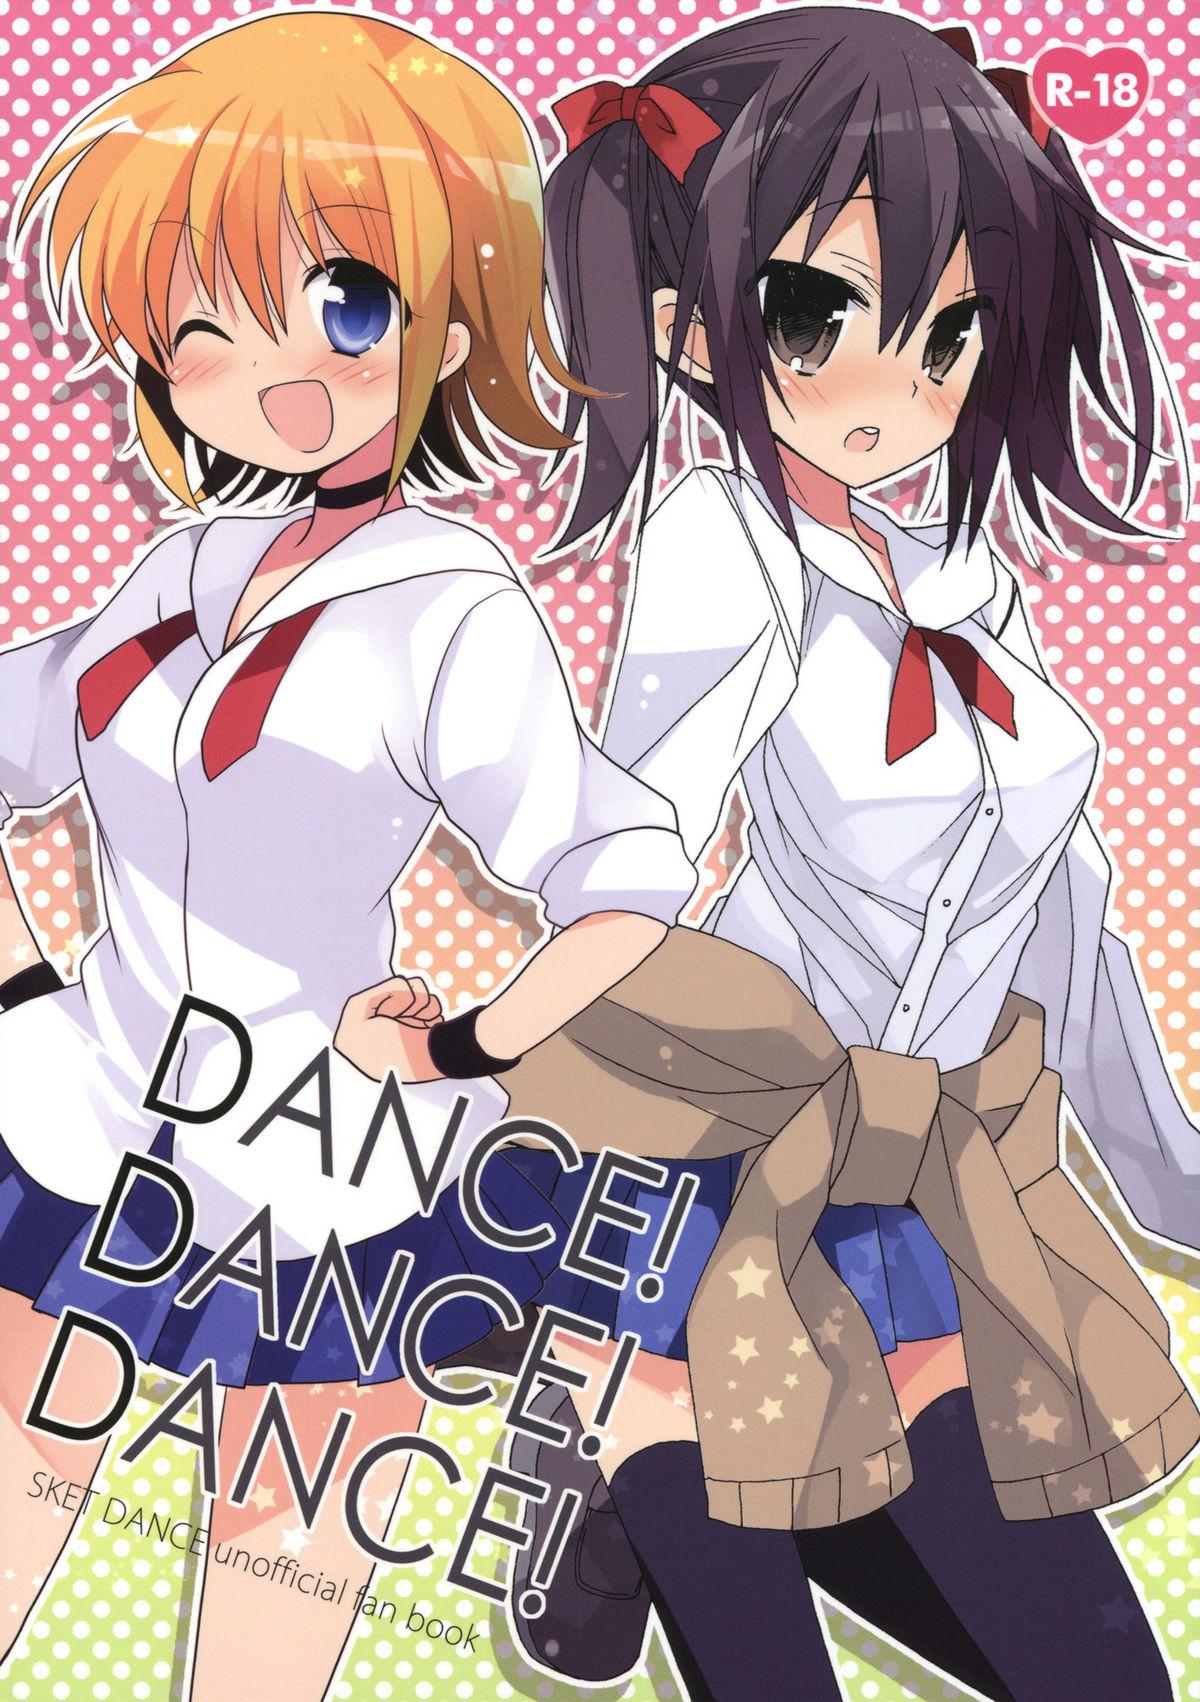 DANCE! DANCE! DANCE! 0